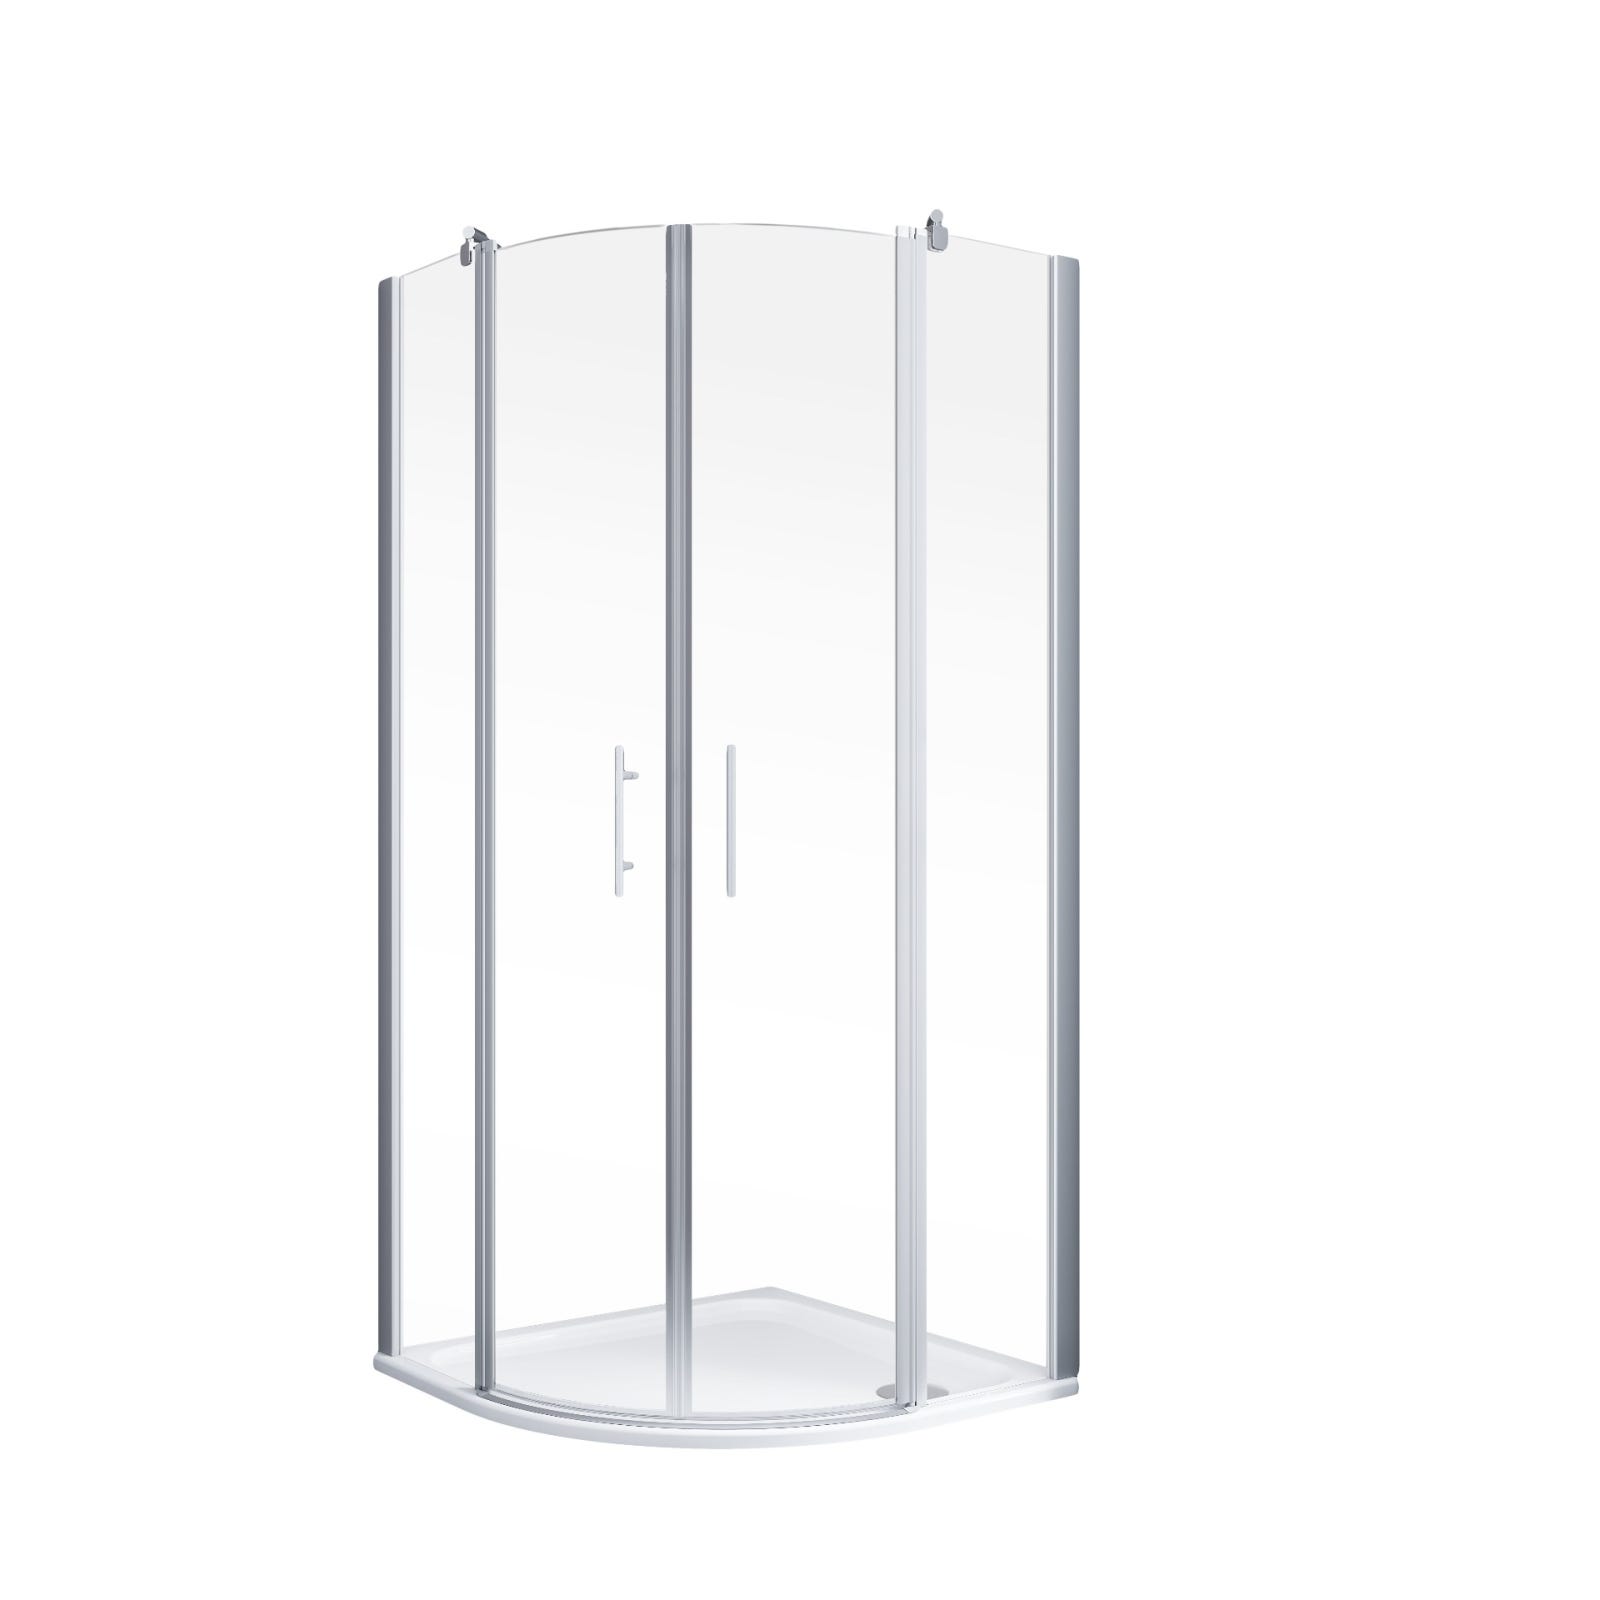 Schulte paroi de douche acces d'angle arrondi avec portes battantes, 90 x 90 x 192 cm, verre 5 mm transparent anticalcaire, alu argenté 1